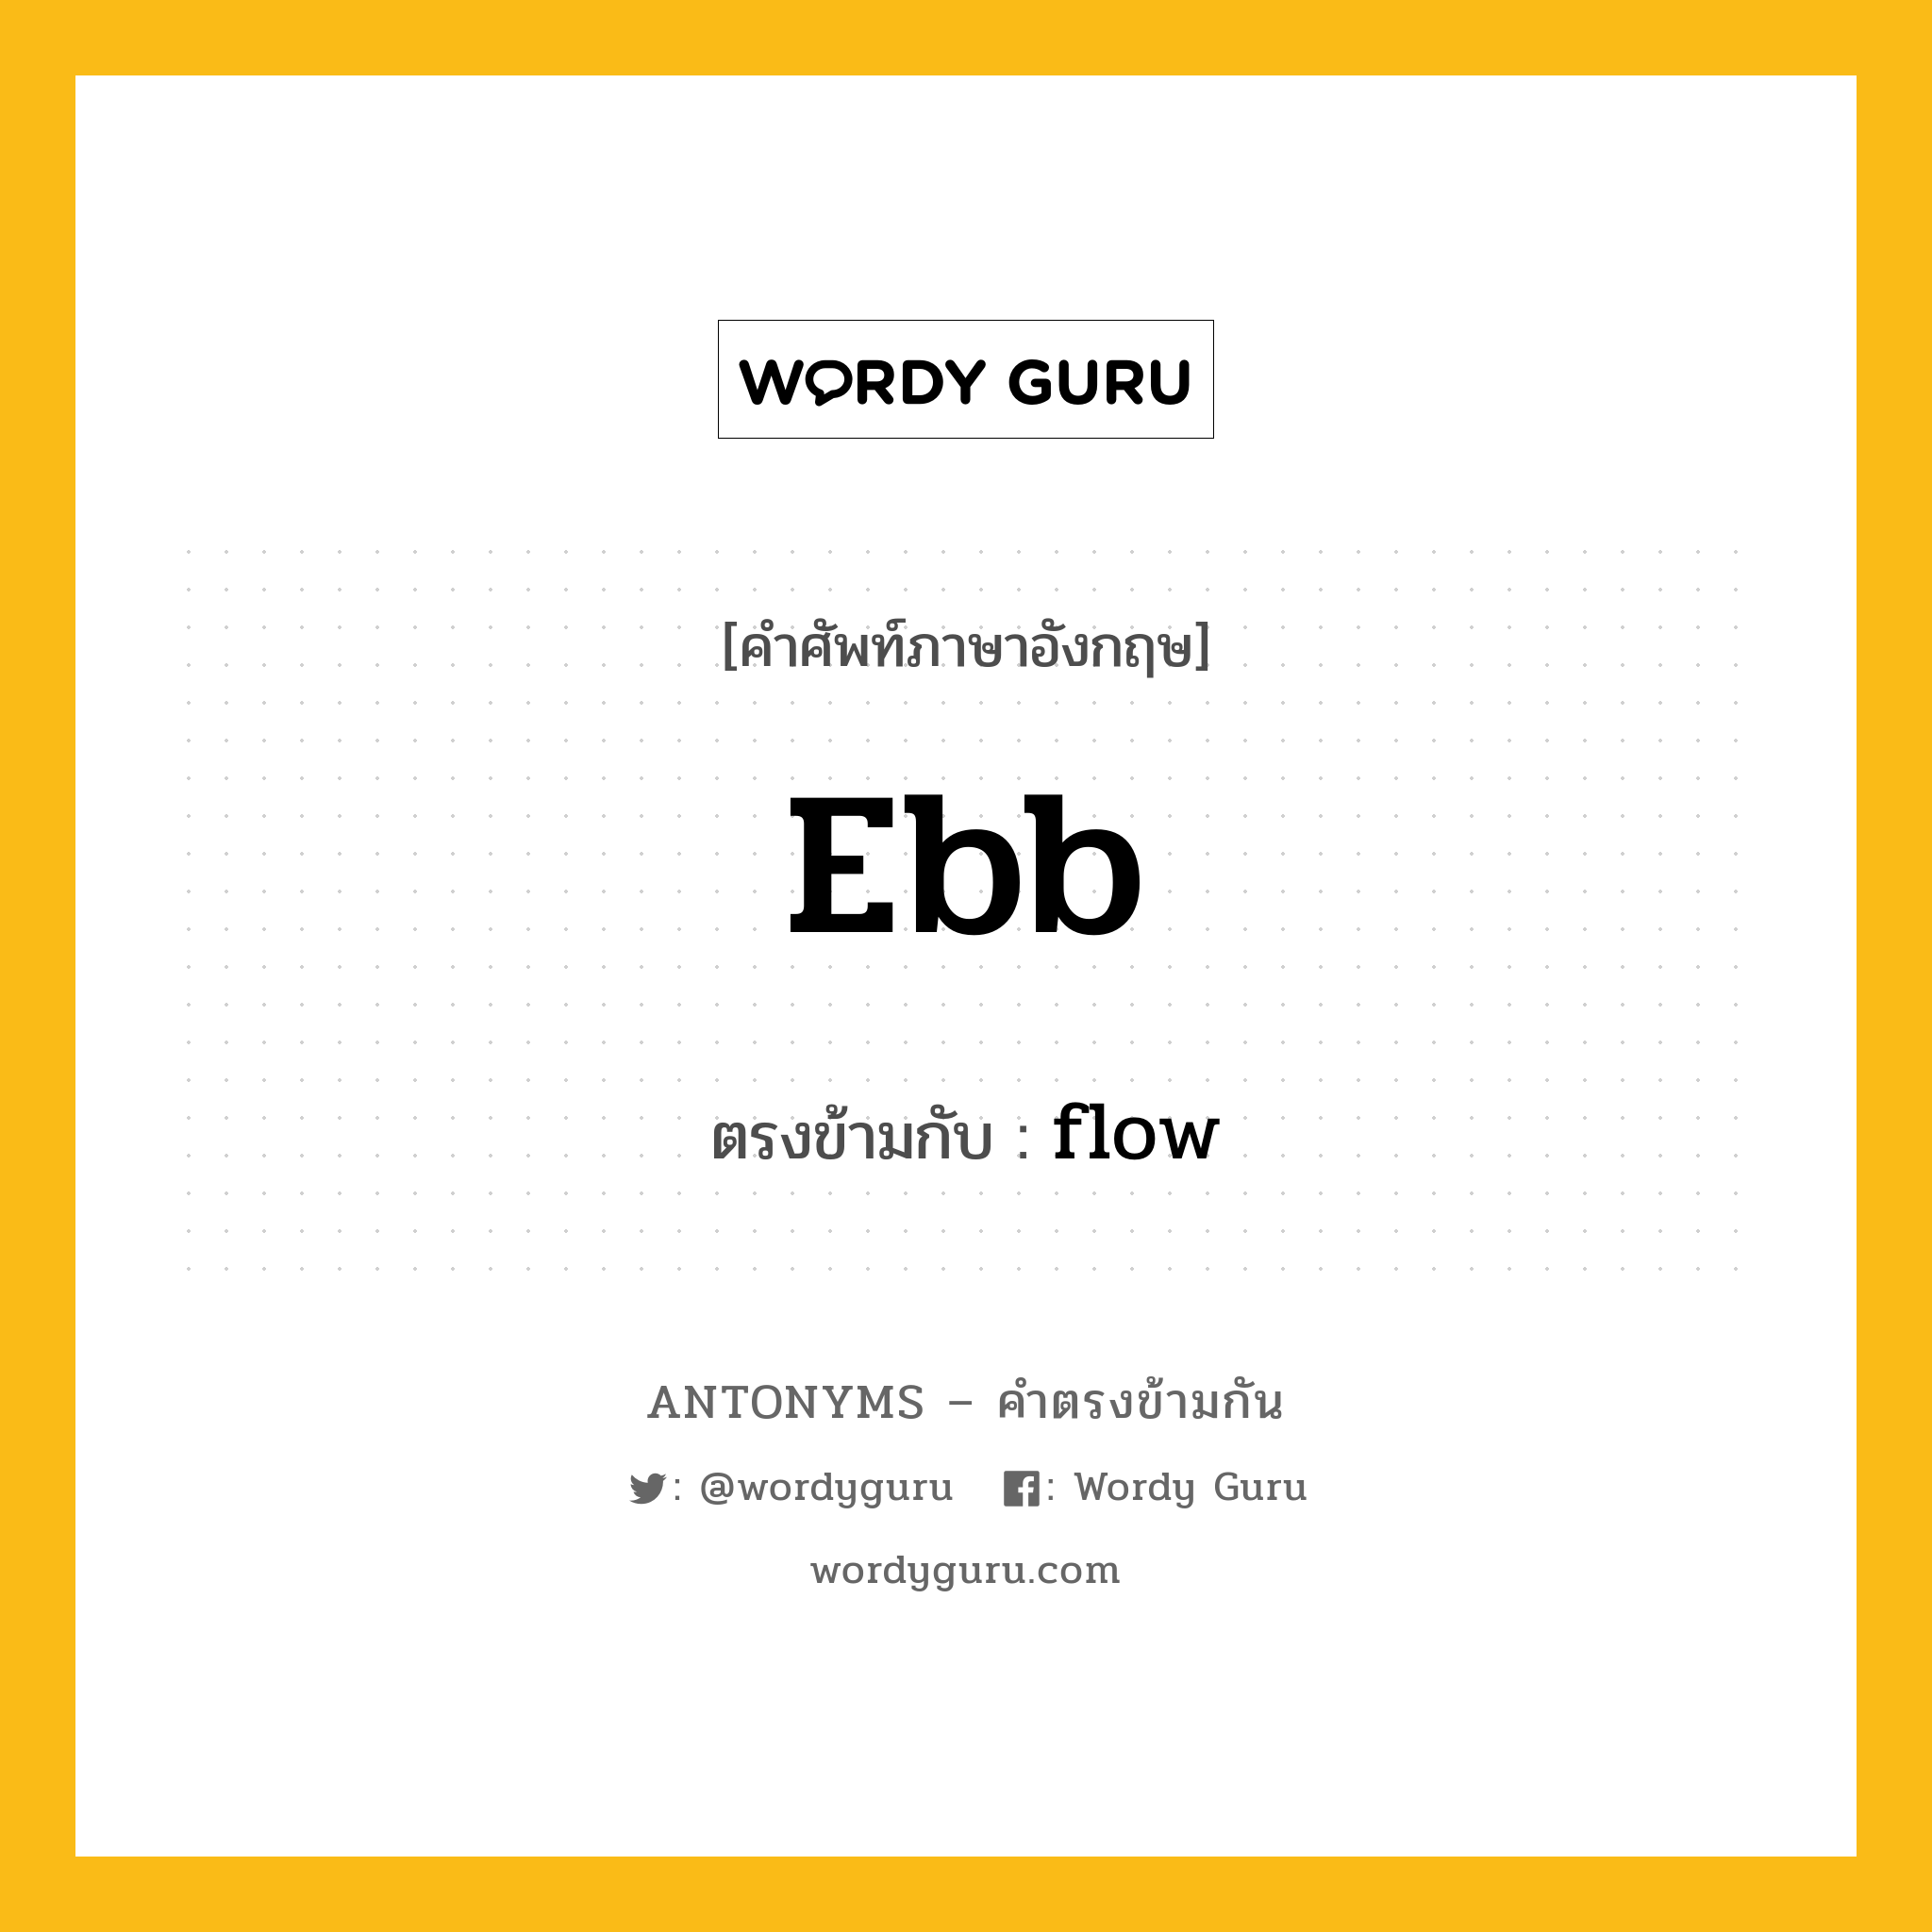 ebb เป็นคำตรงข้ามกับคำไหนบ้าง?, คำศัพท์ภาษาอังกฤษ ebb ตรงข้ามกับ flow หมวด flow